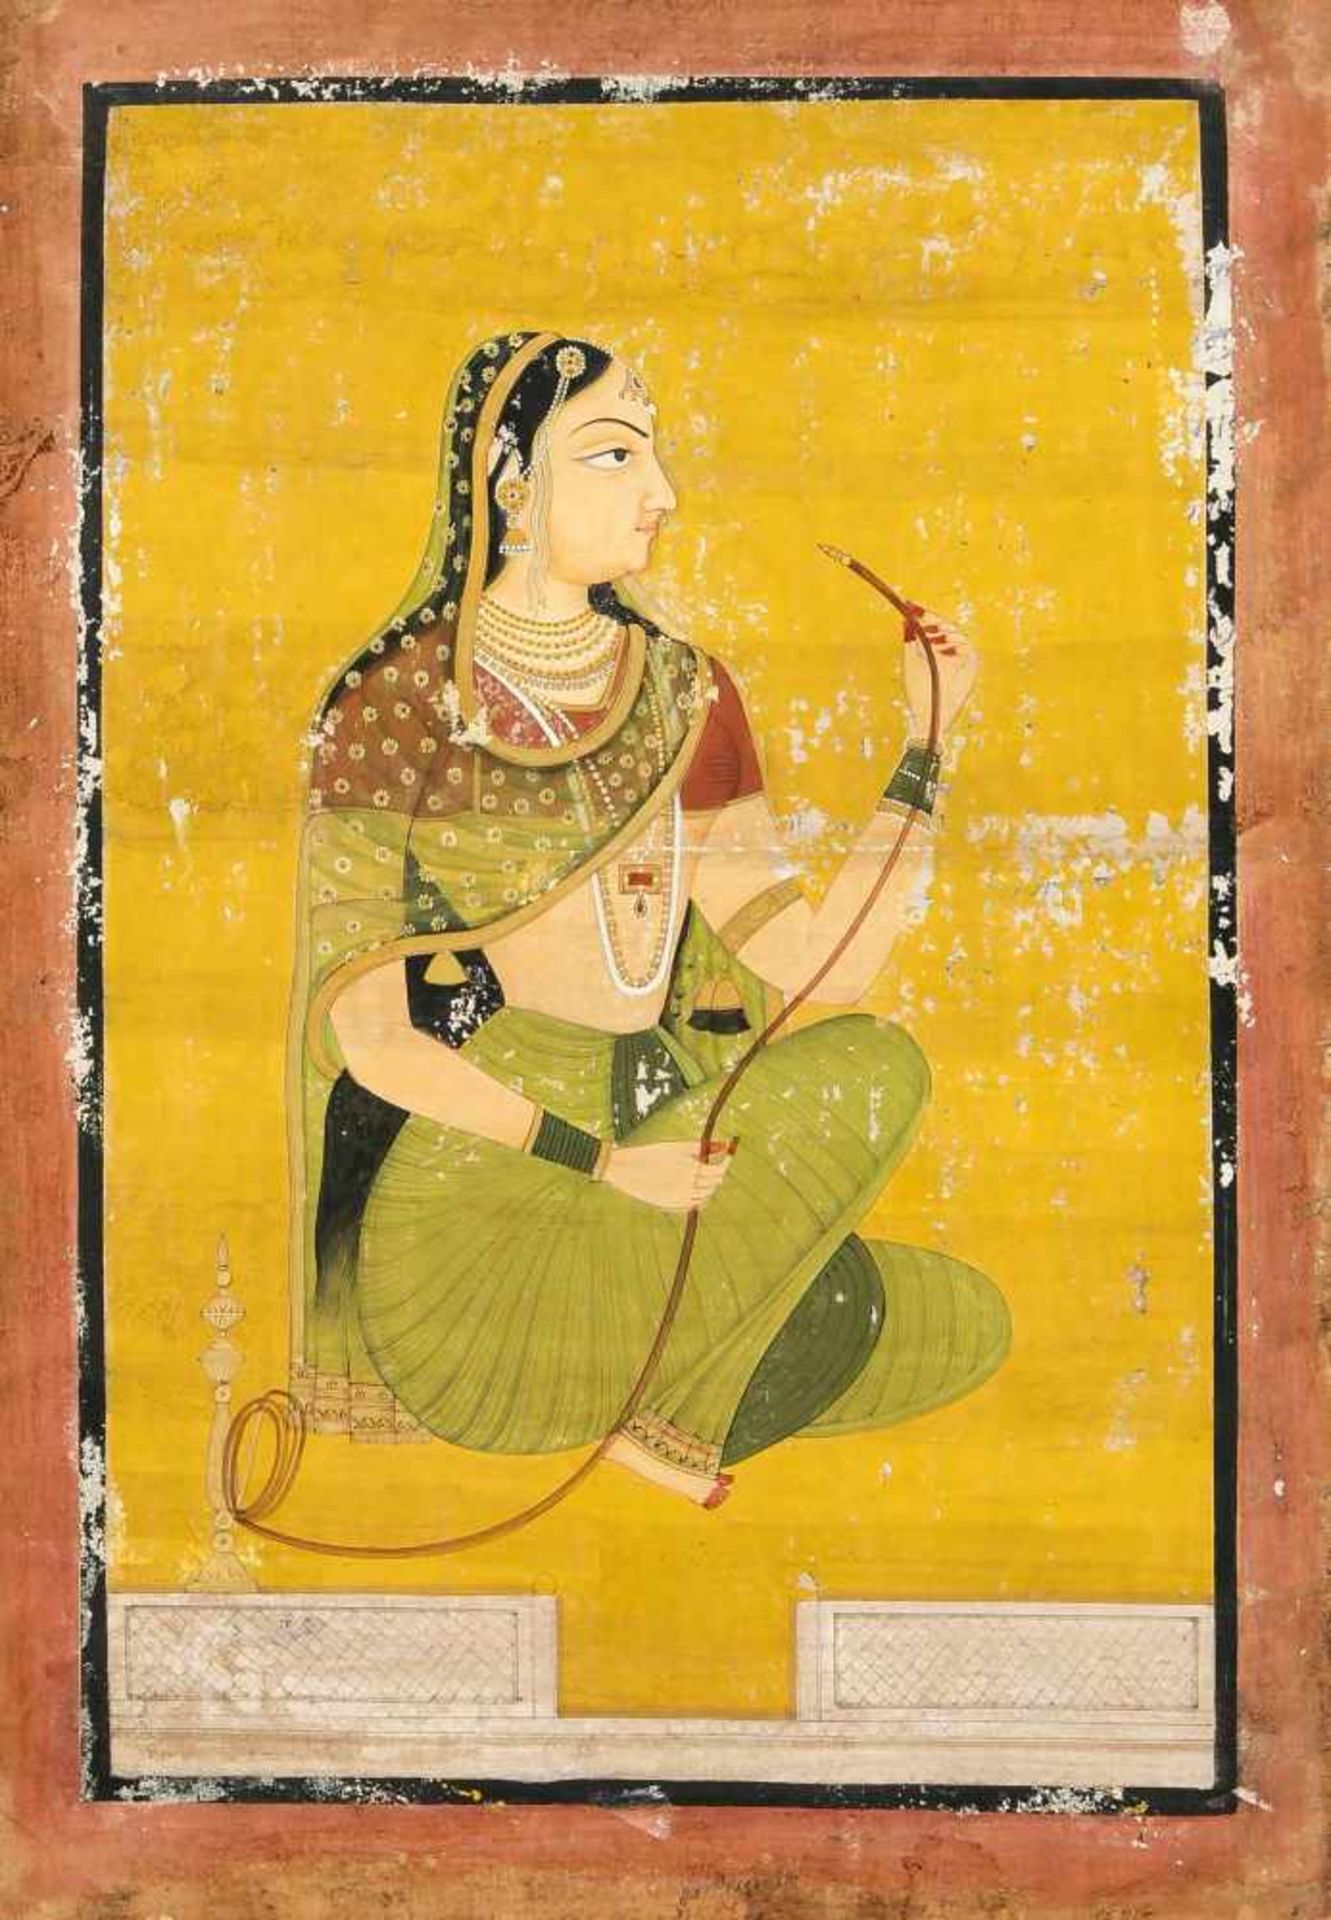 Indische Malerei, Rajasthan-Schule, um 1870, polychrome Pigmente auf festem Papier, kaschiert auf